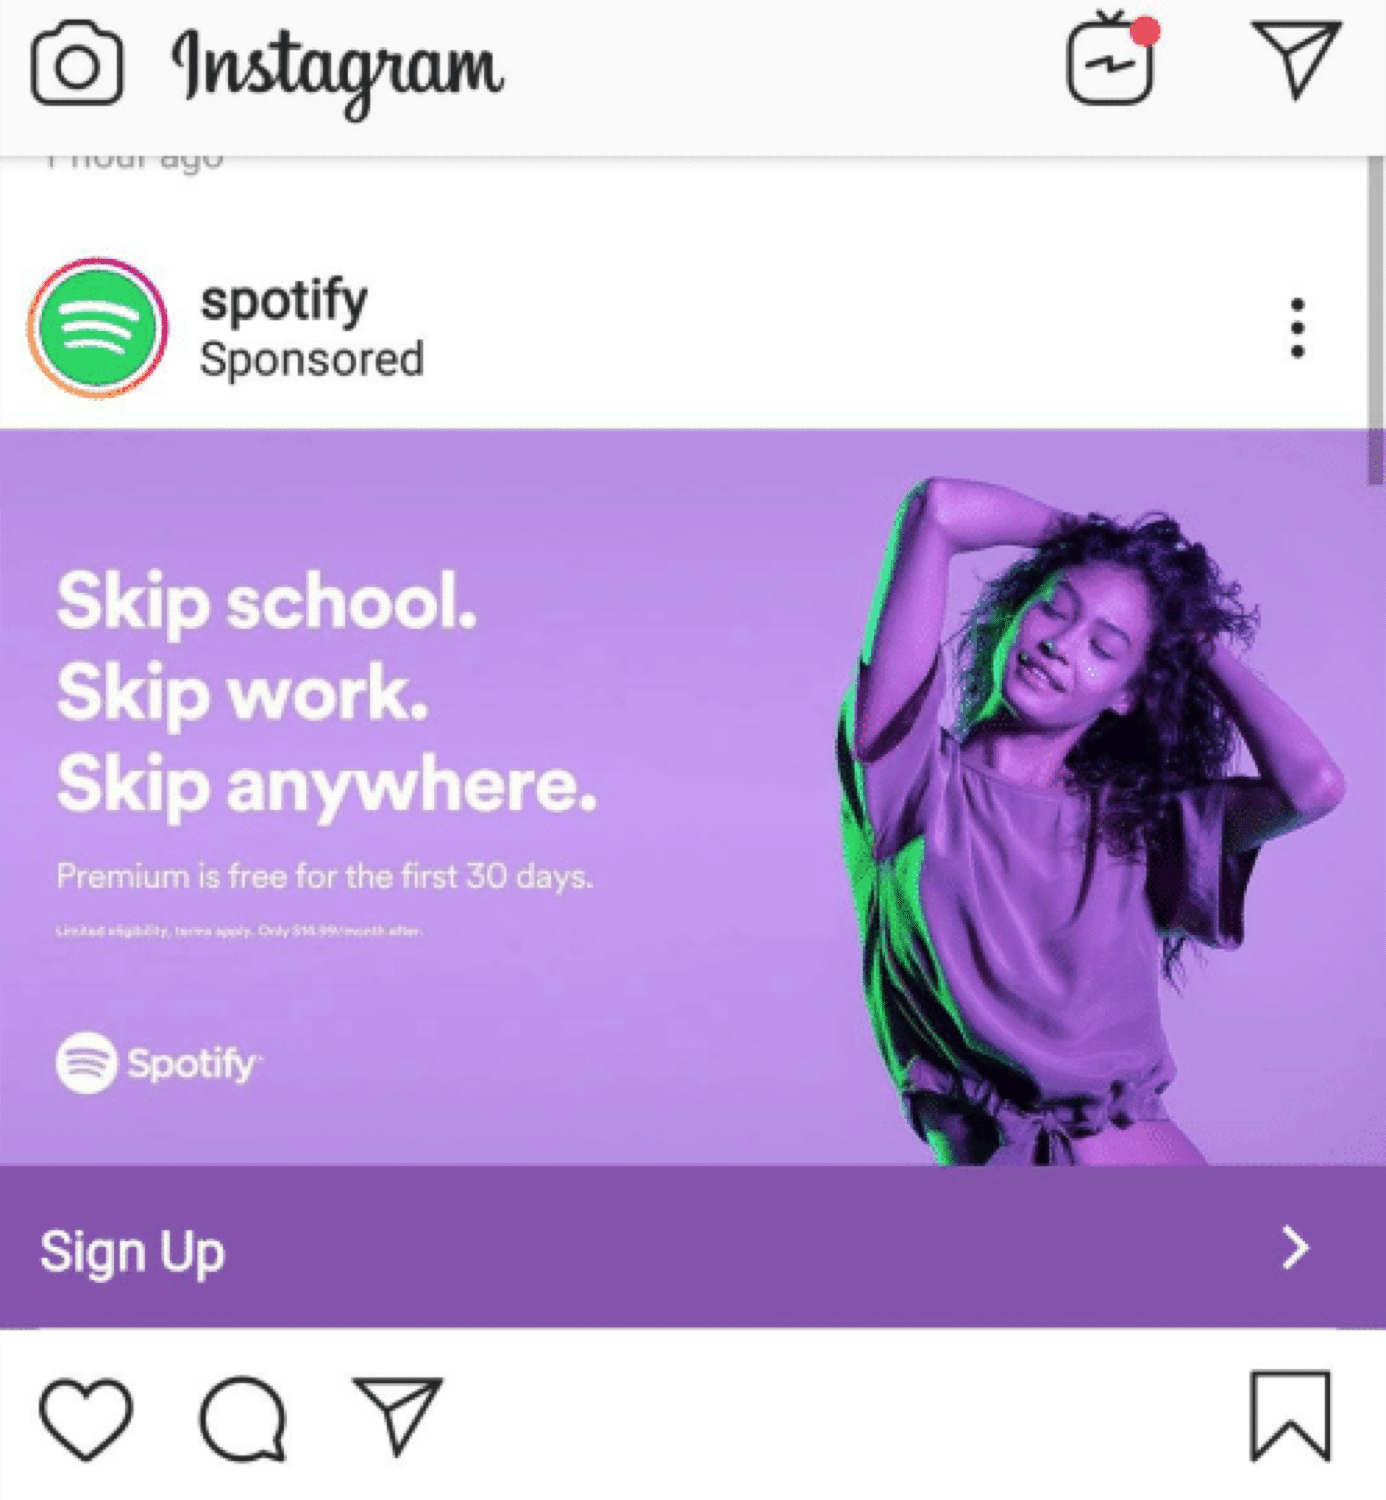 Instagram広告の例